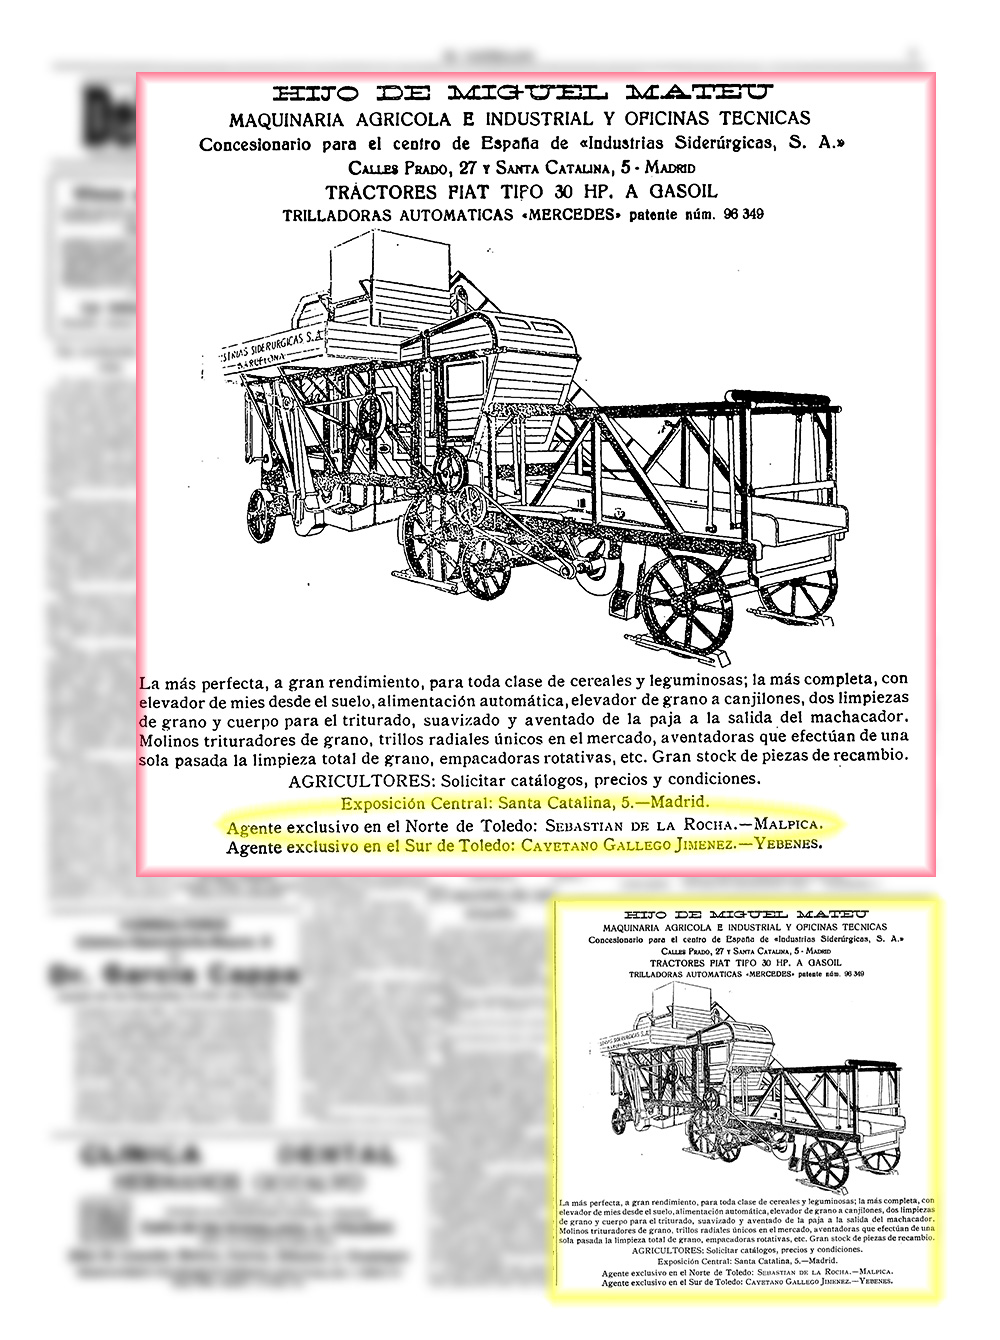  Anuncio de maquinaria agrícola. El Castellano. 7/4/1930